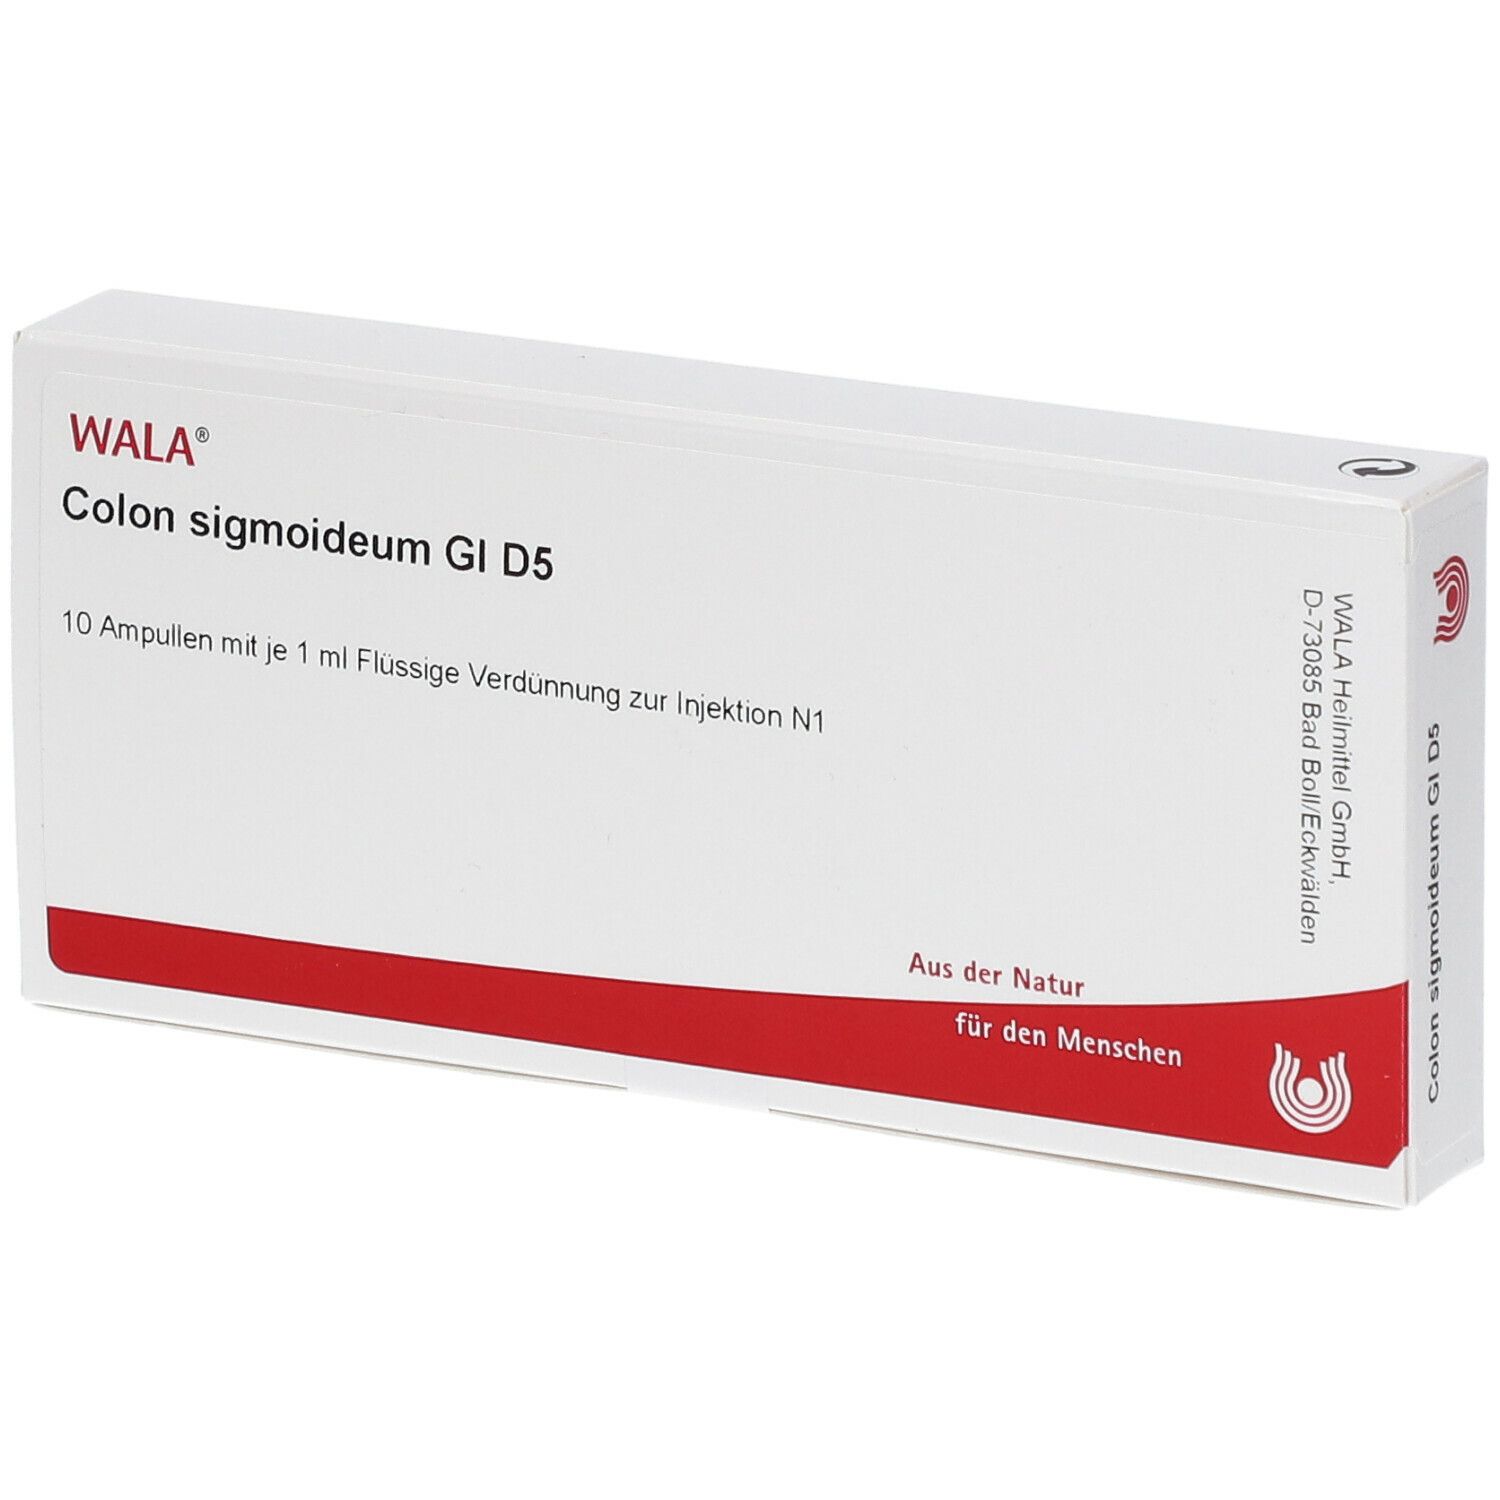 WALA® Colon sigmoideum Gl D 5